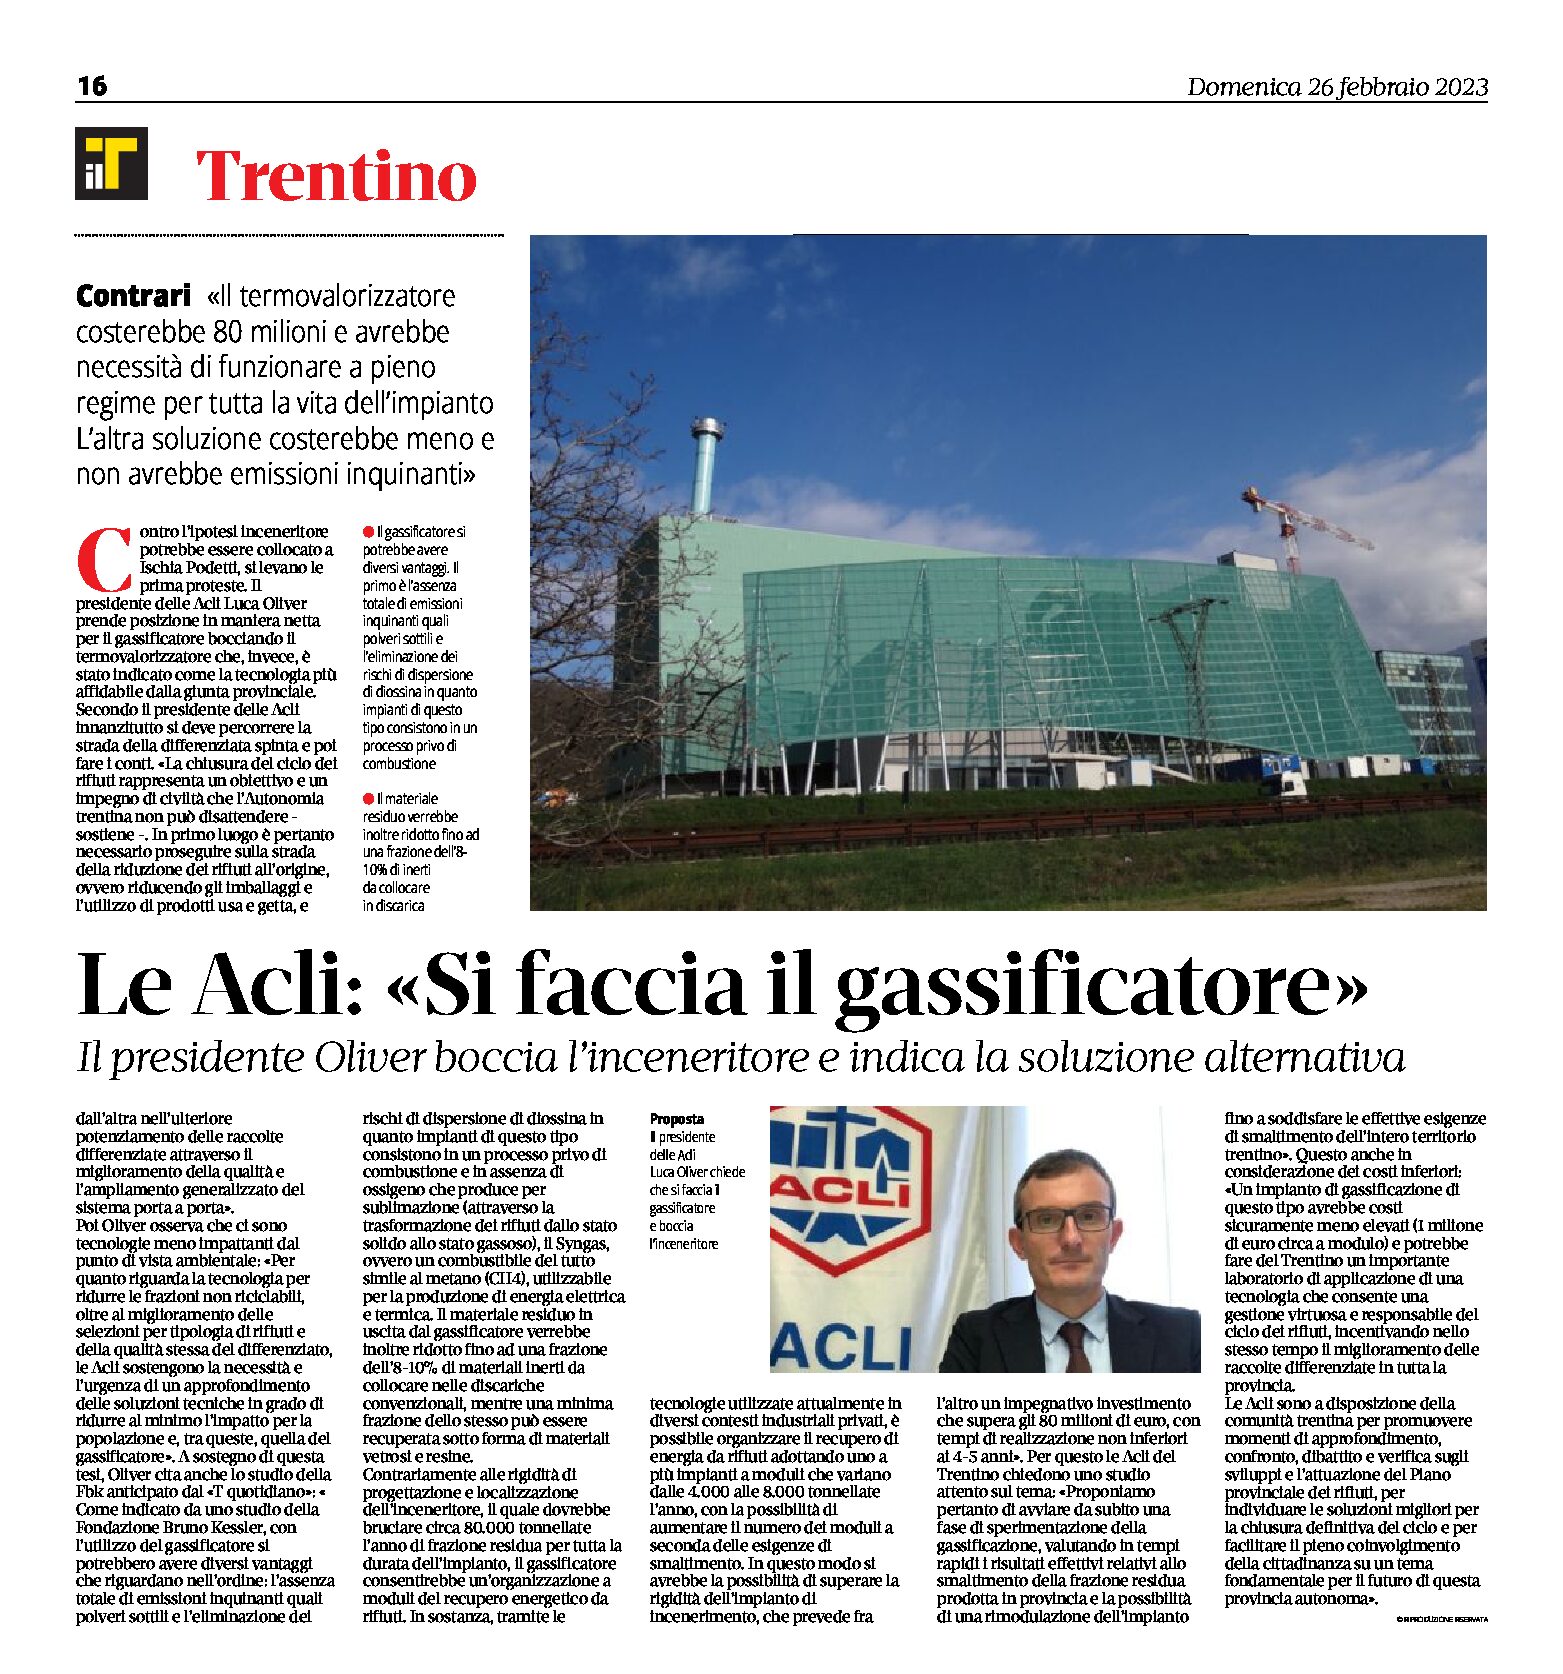 Trentino, le Acli: Oliver boccia l’inceneritore e indica il gassificatore come alternativa